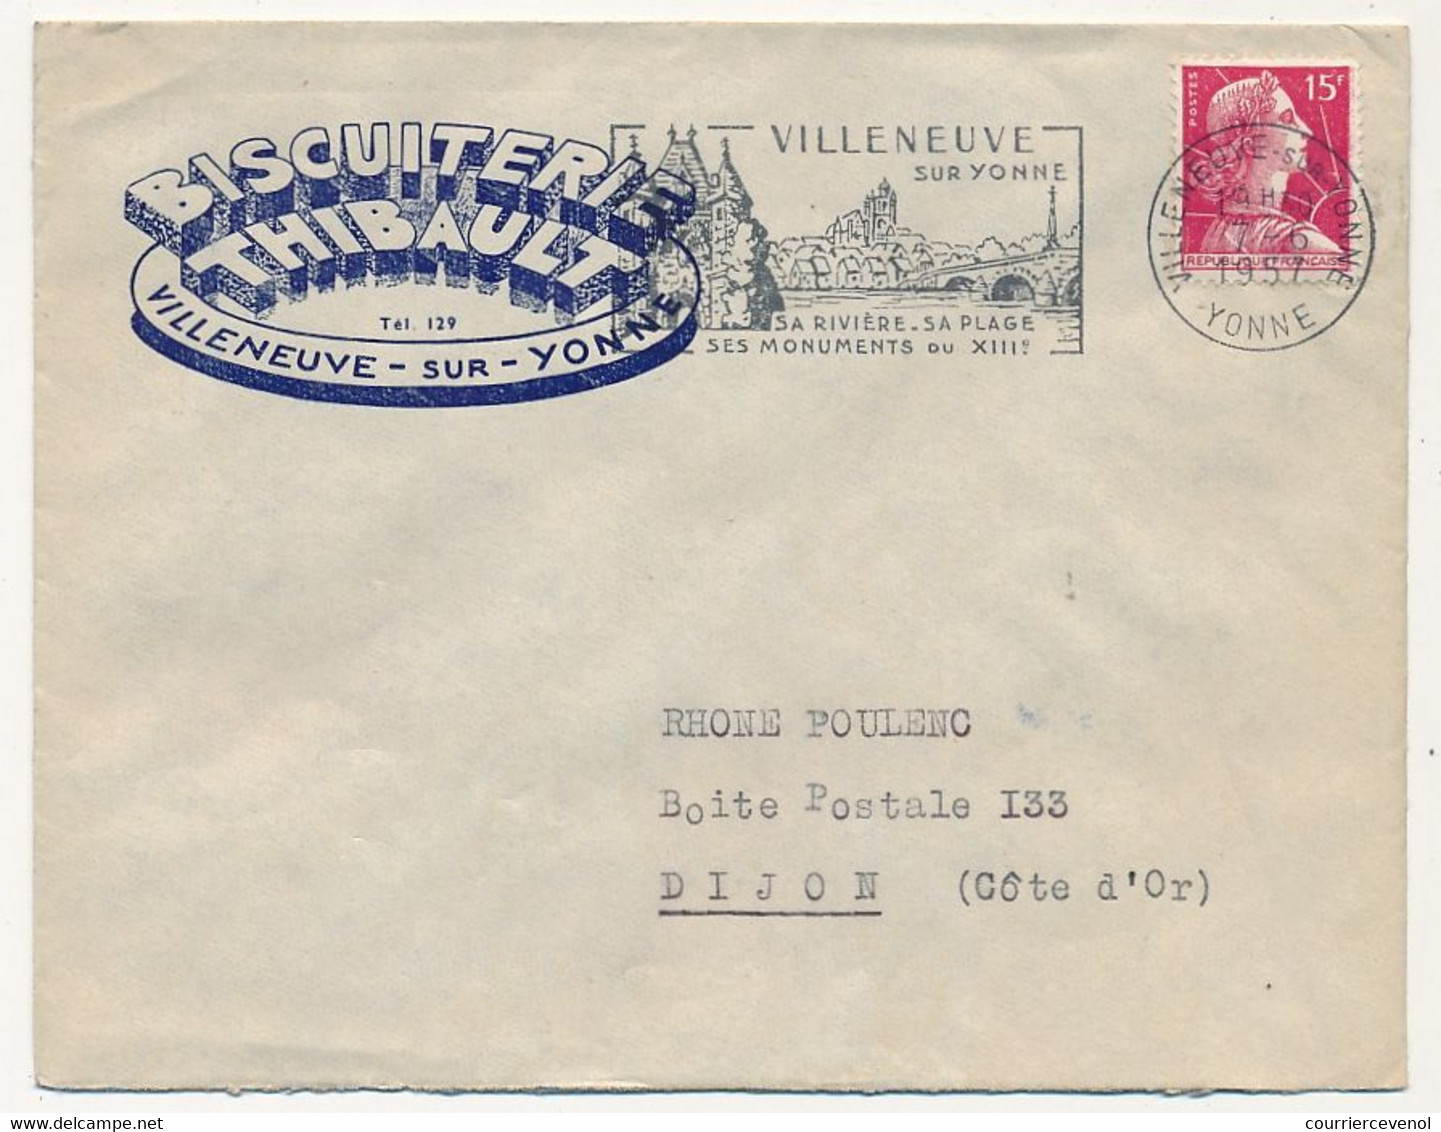 FRANCE - Env. En-tête "Biscuiterie Thibault - Villeneuve S/Yonne" Affr Muller 1957 - Alimentaire